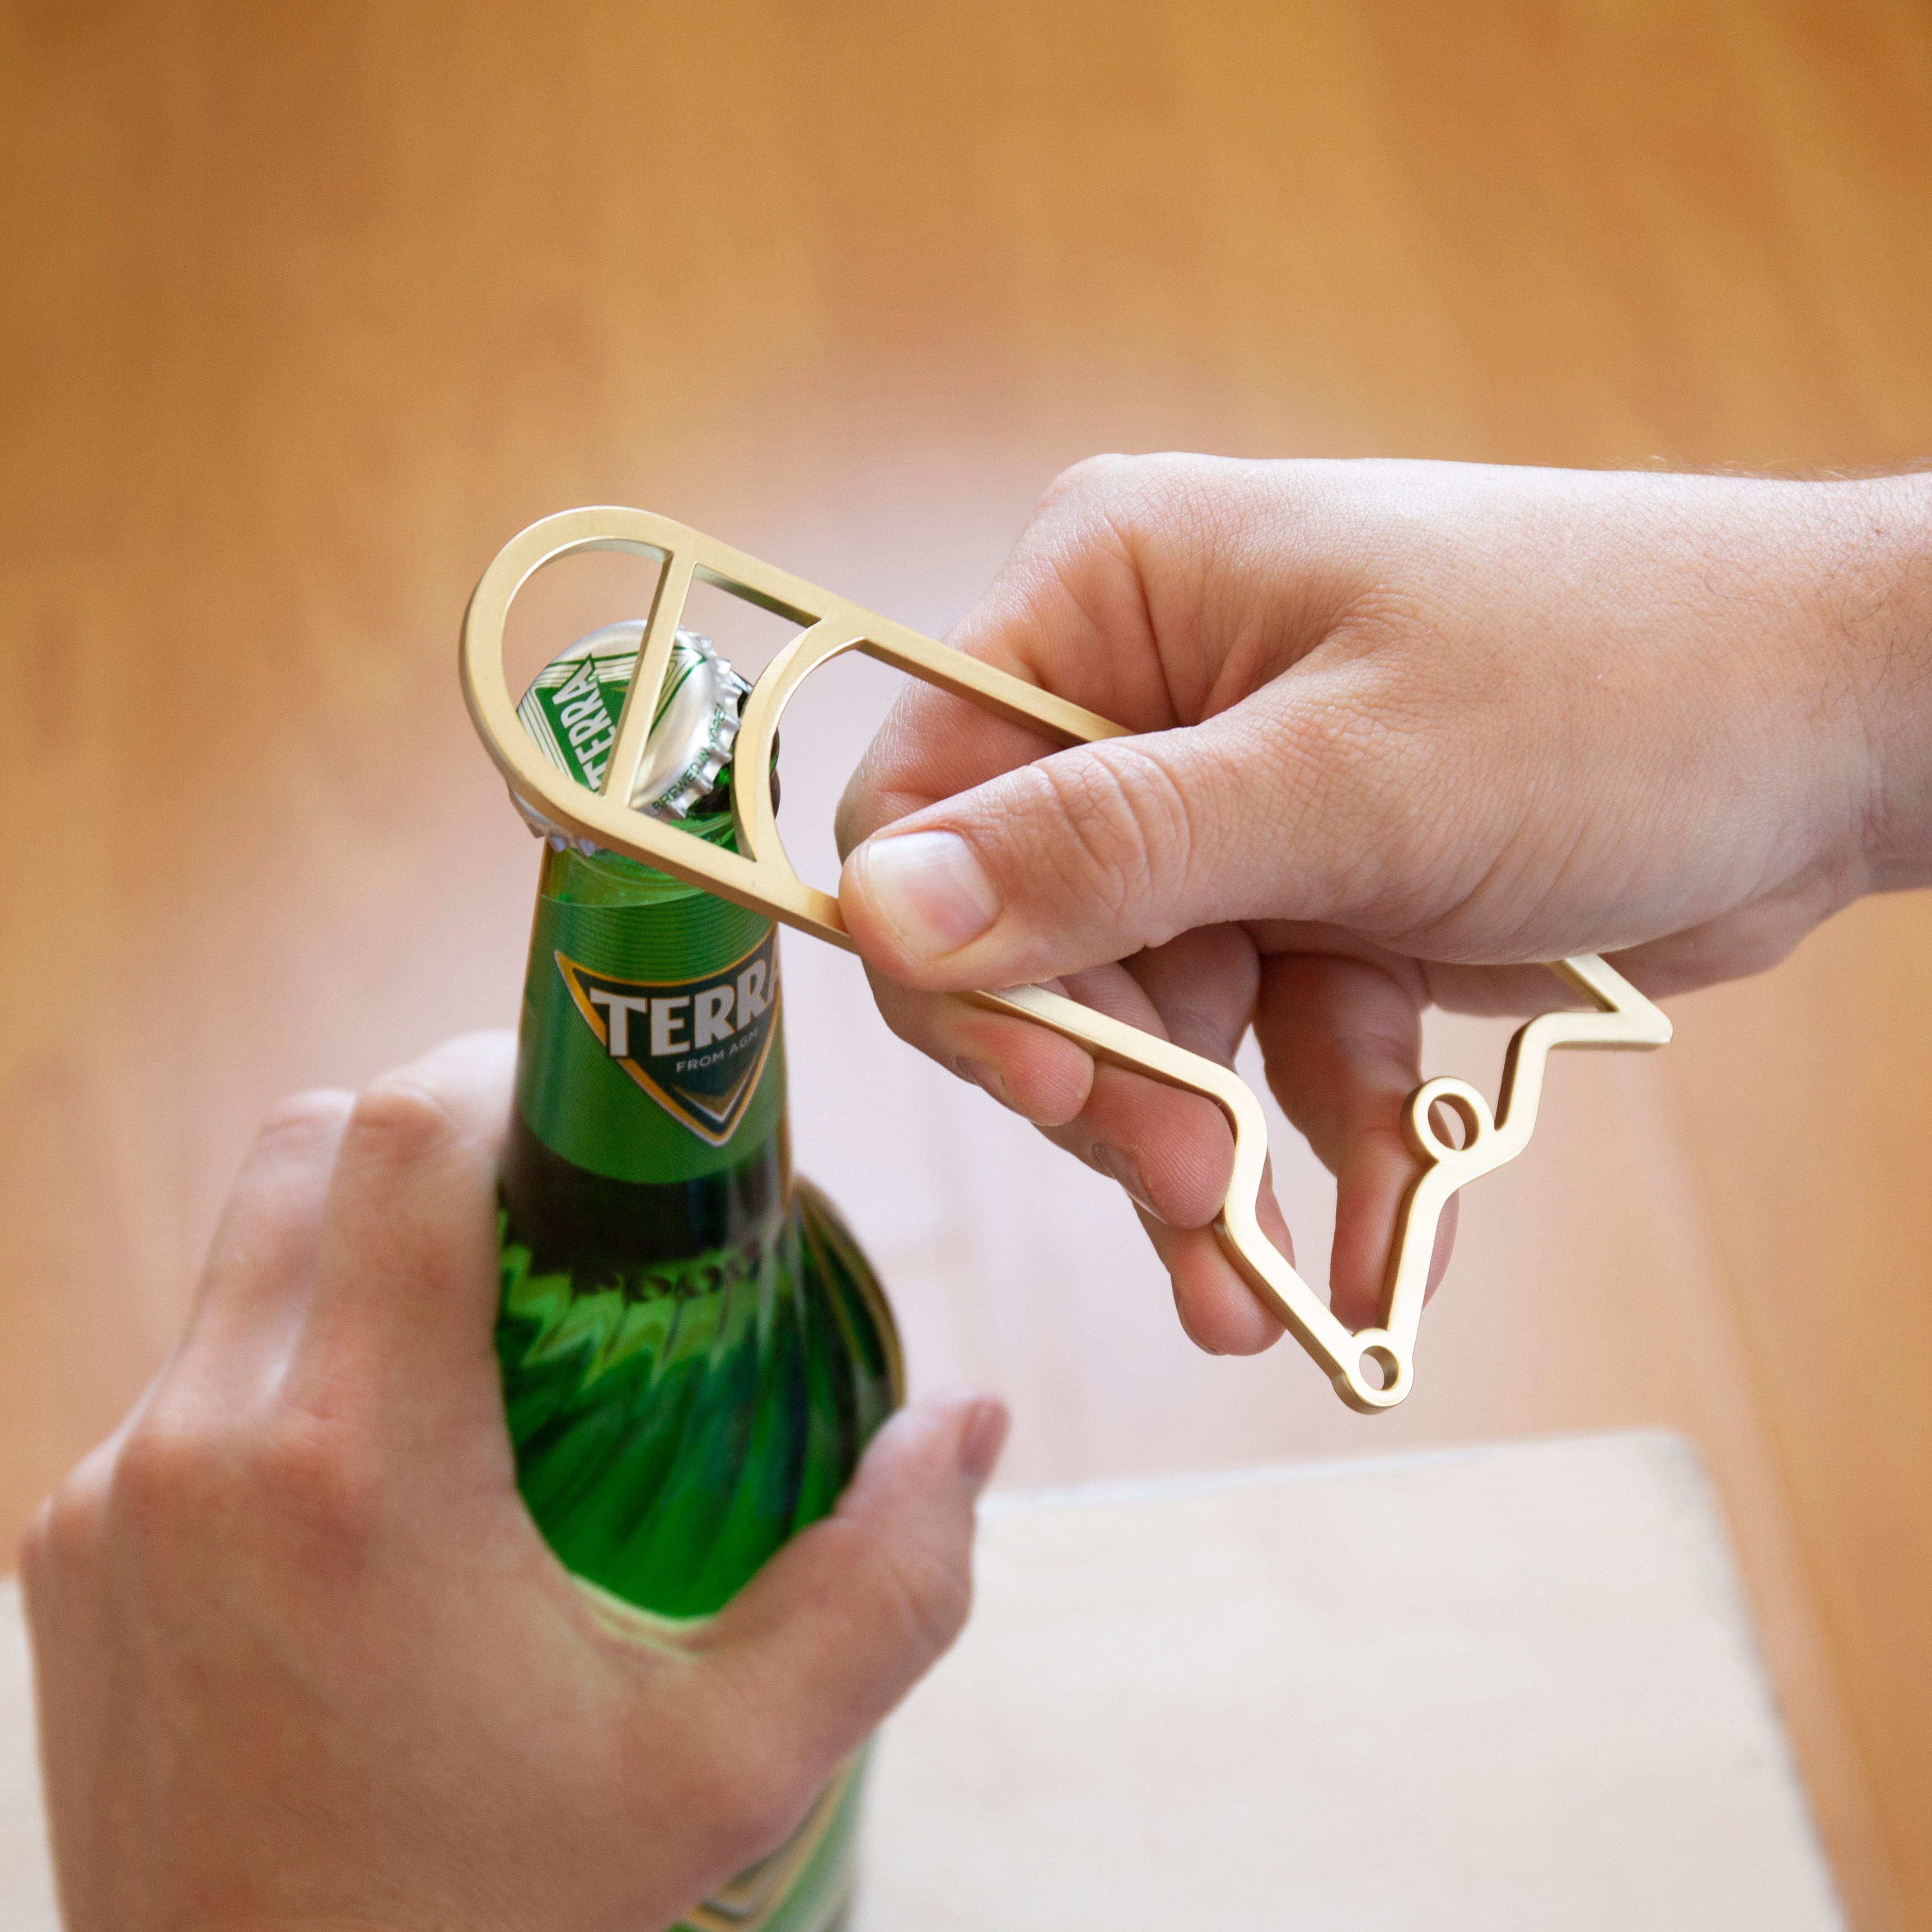 One-Handed Bottle Opener